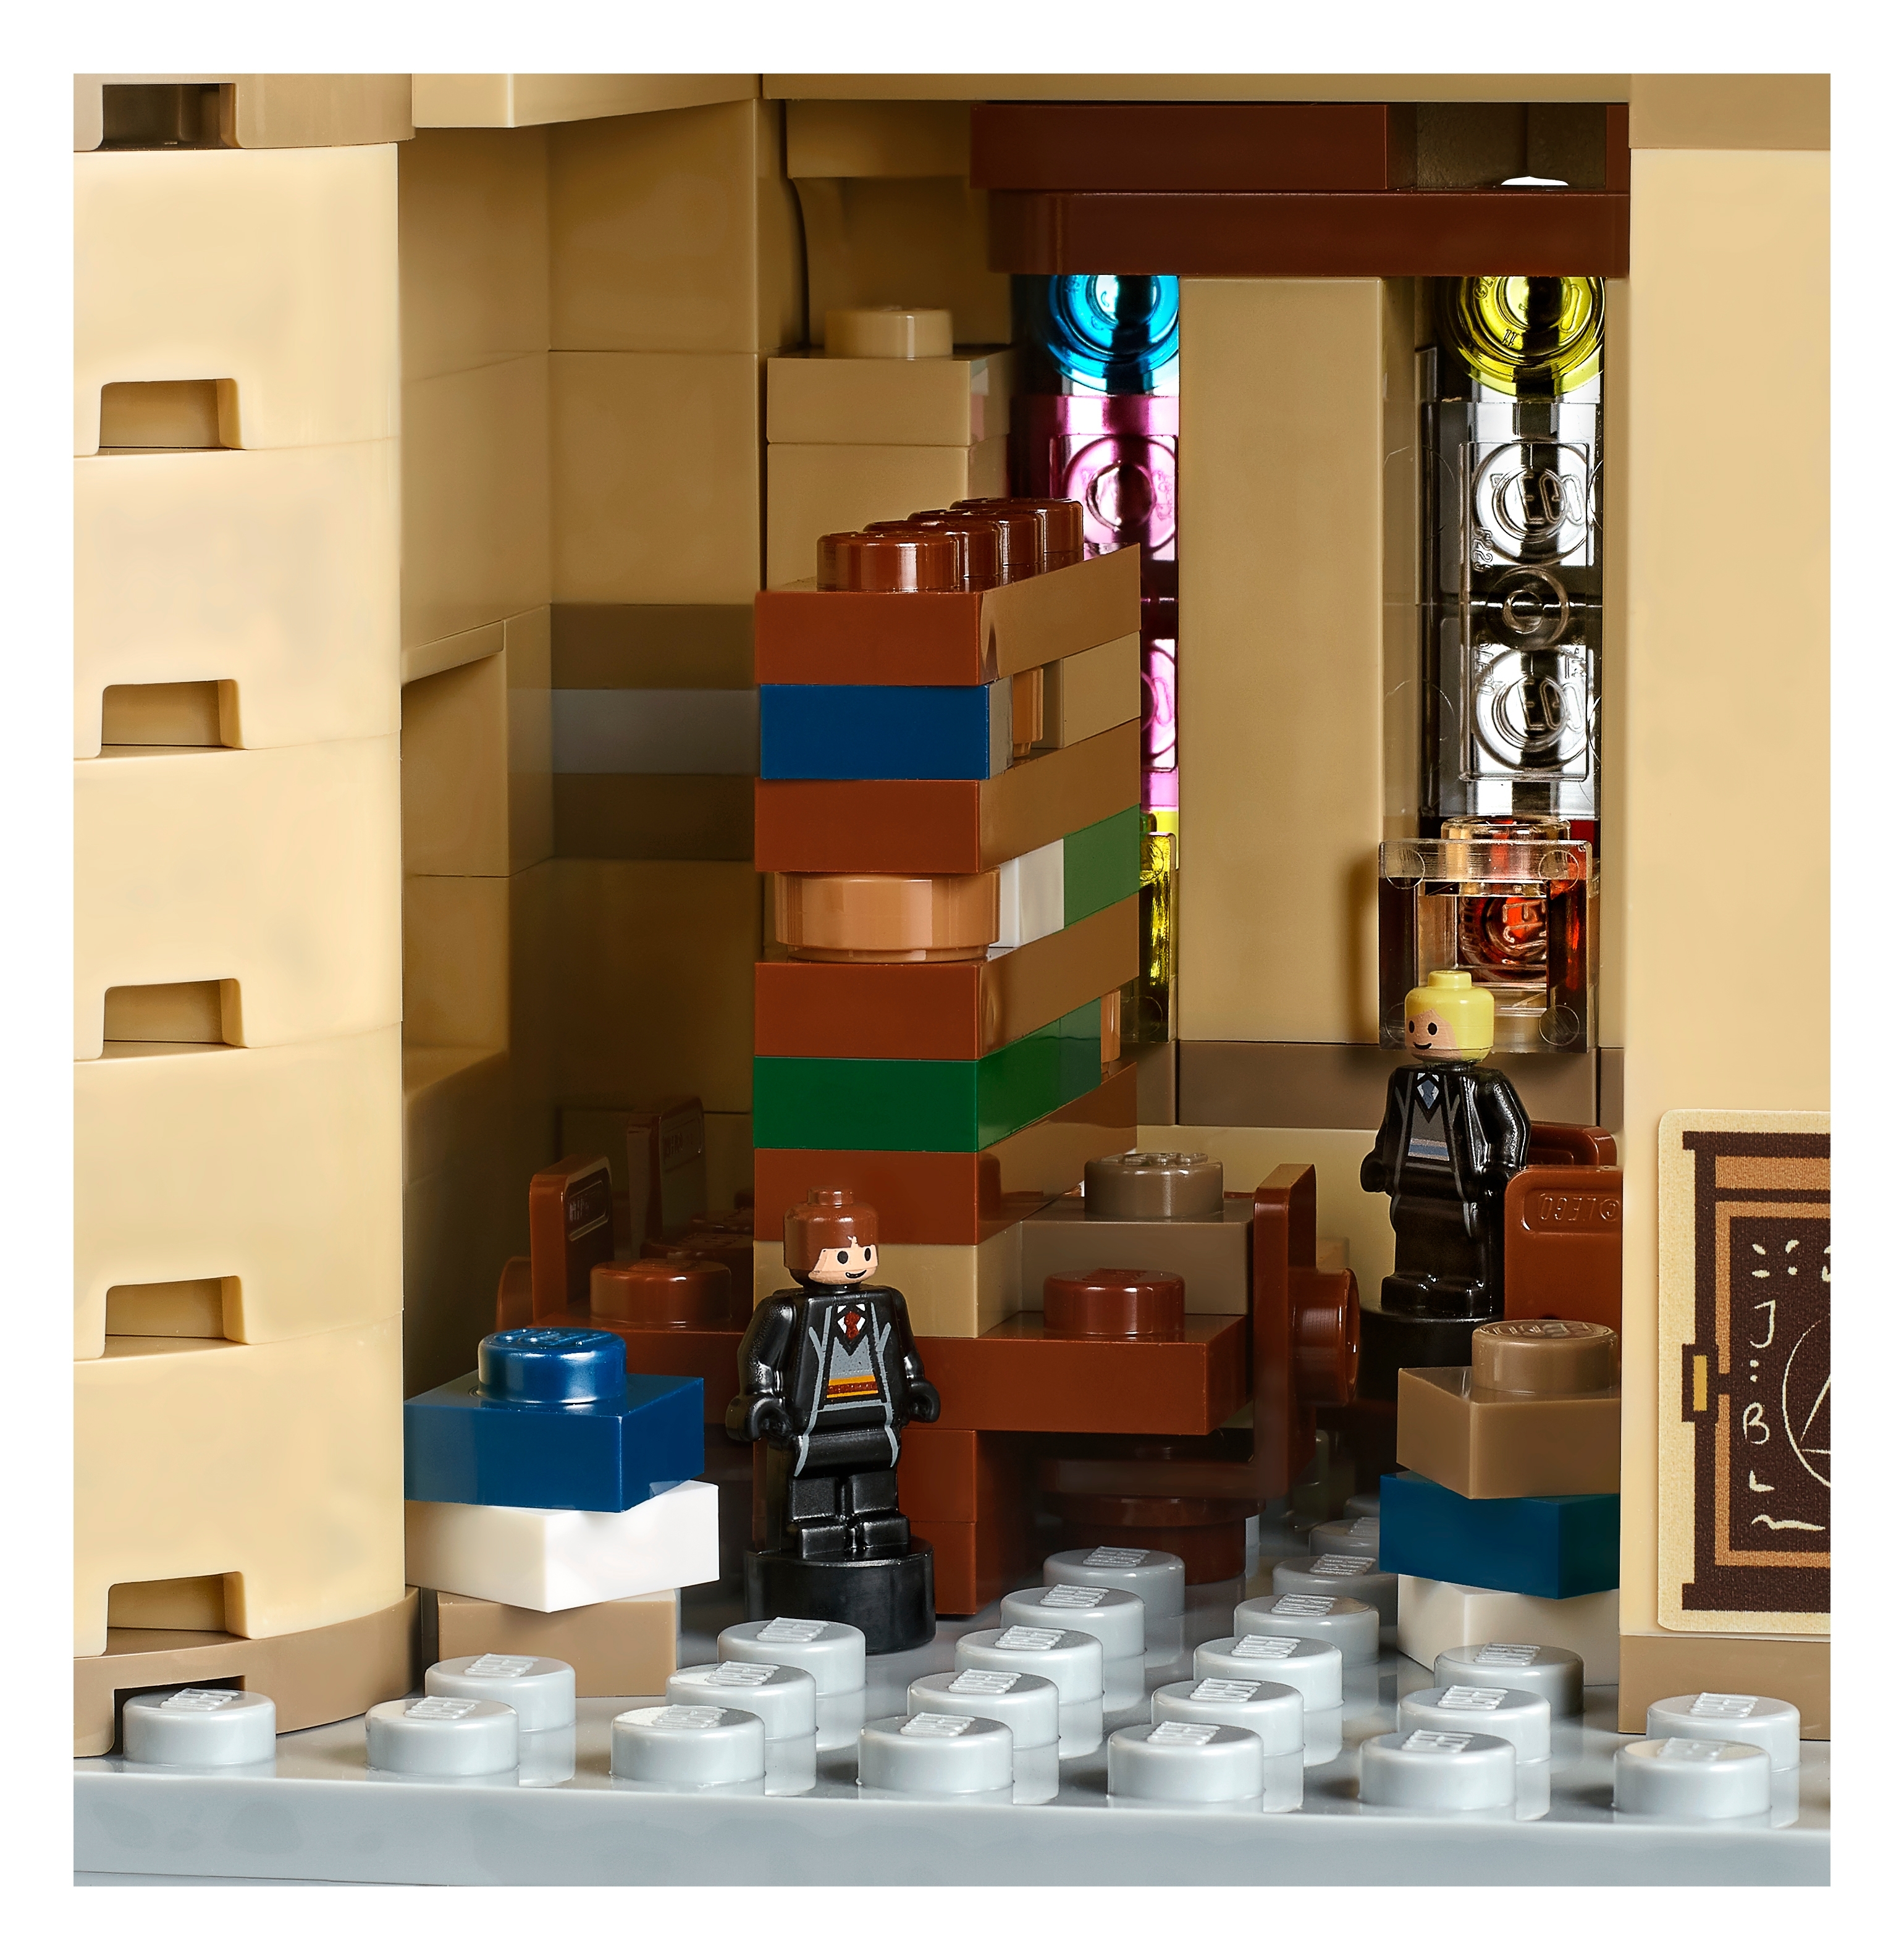 Lego Rowena Ravenclaw 71043 Hogwarts Castle Harry Potter